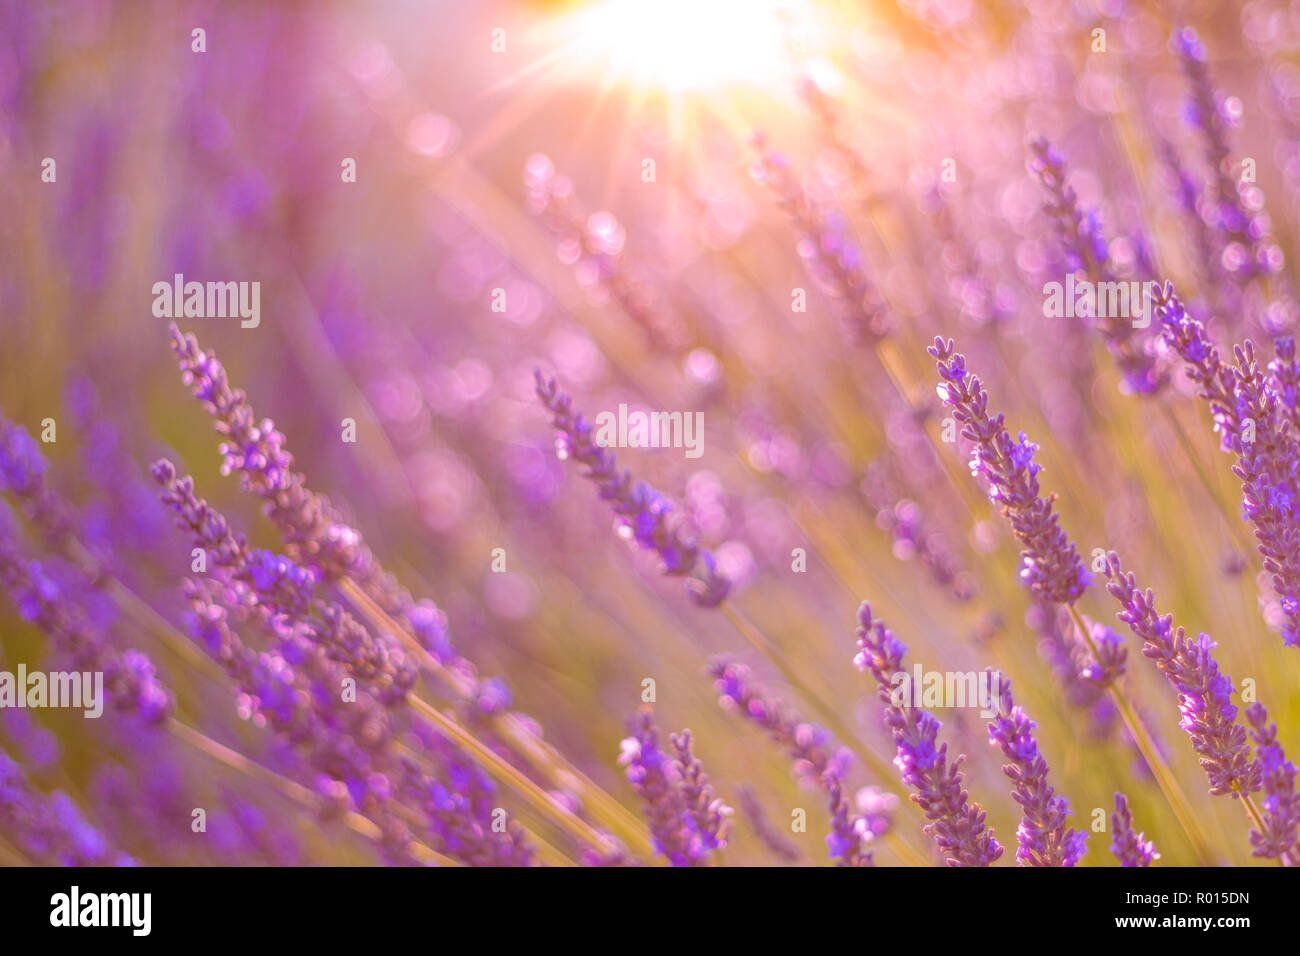 Beau coucher du soleil lavande en torchère. Fleurs d'été, close-up de l'été lumineux meadow et rayons de soleil. Fond nature idyllique Banque D'Images